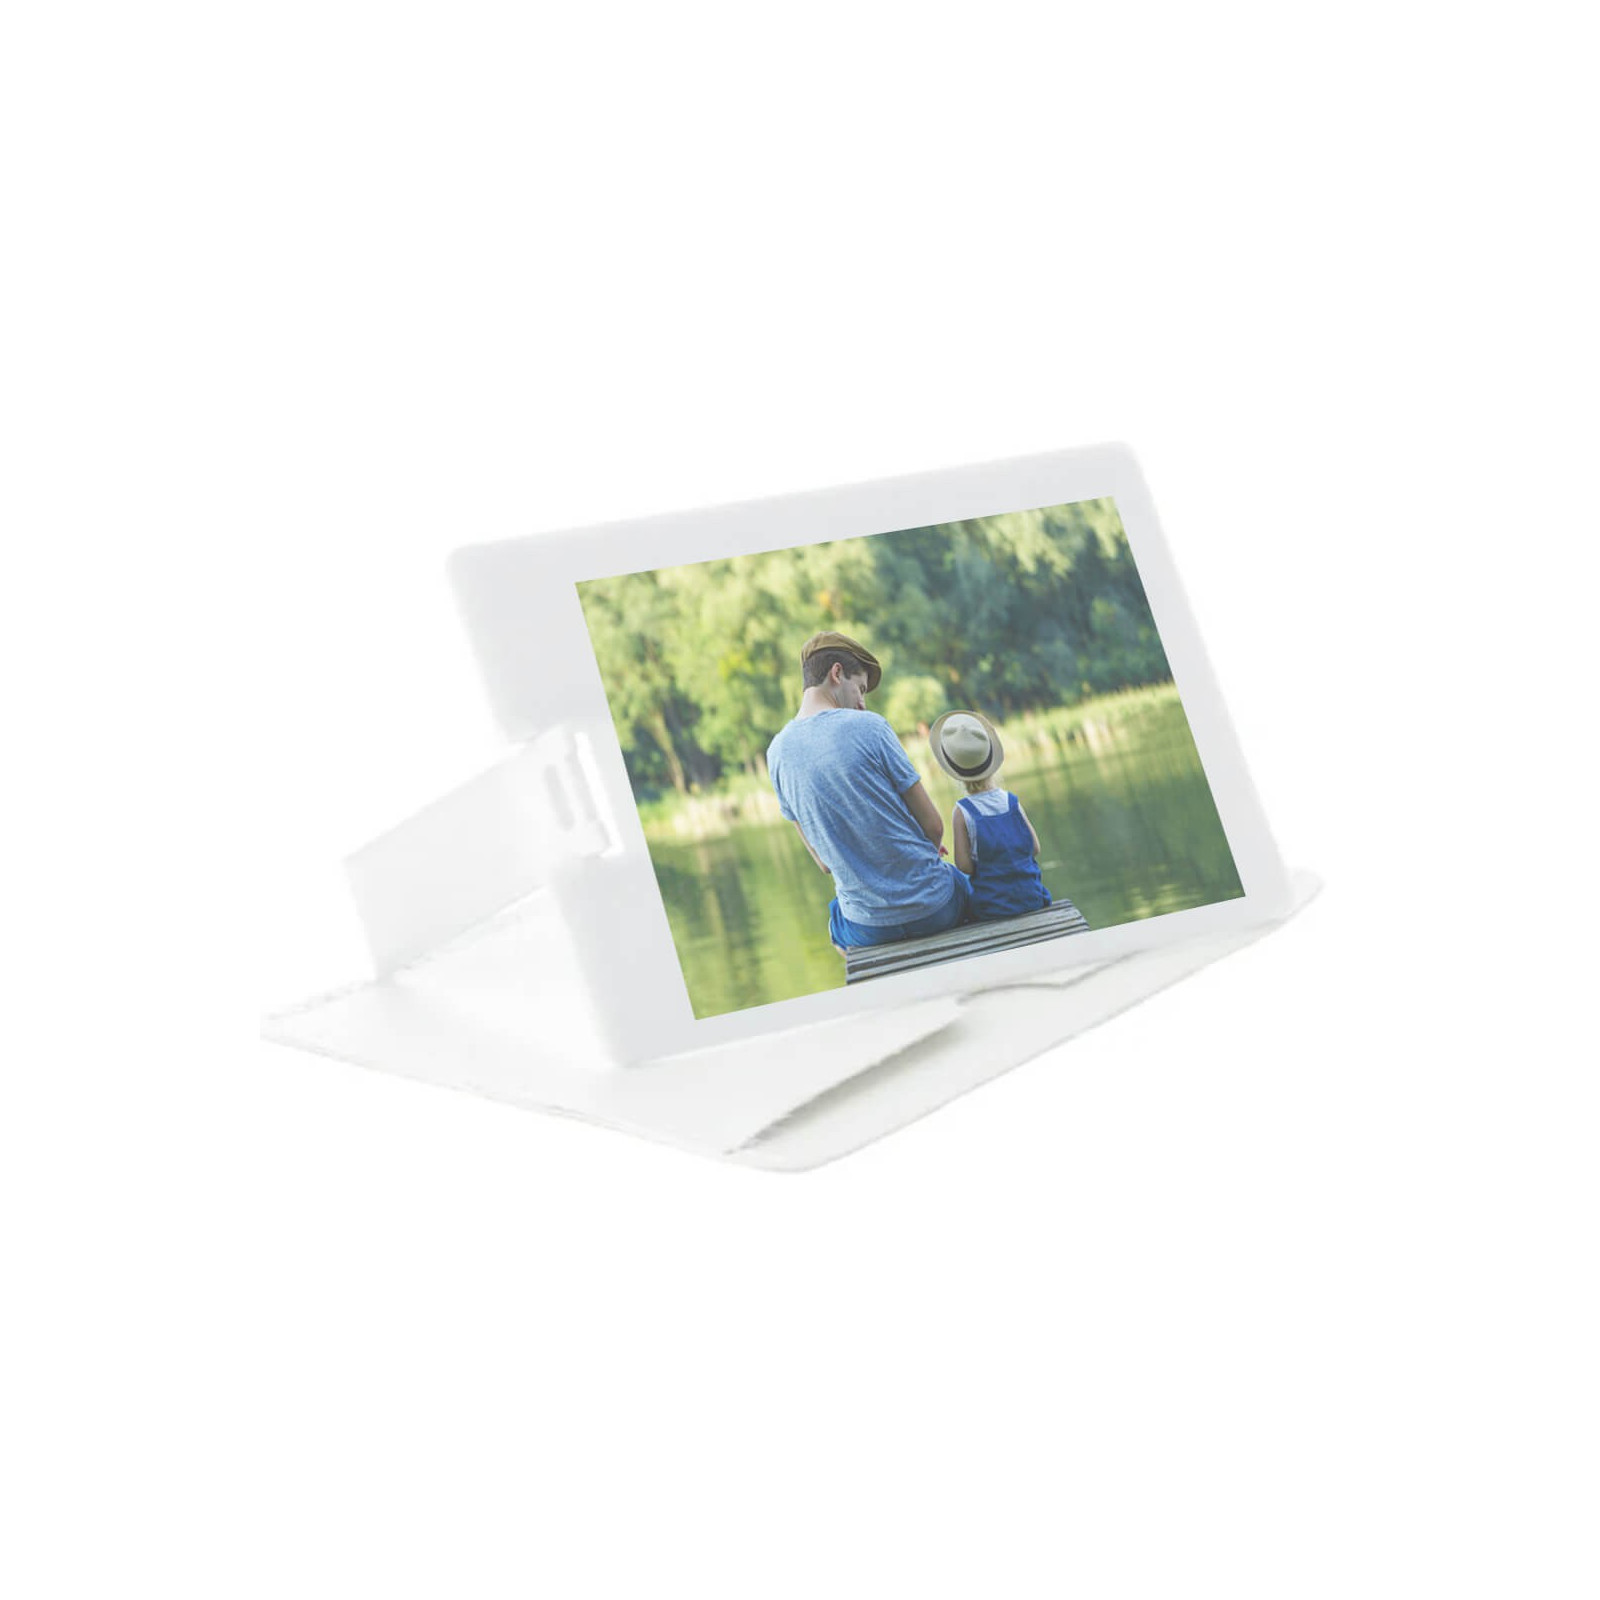 Memoria usb 16 gb tipo tarjeta personalizada con foto a todo color